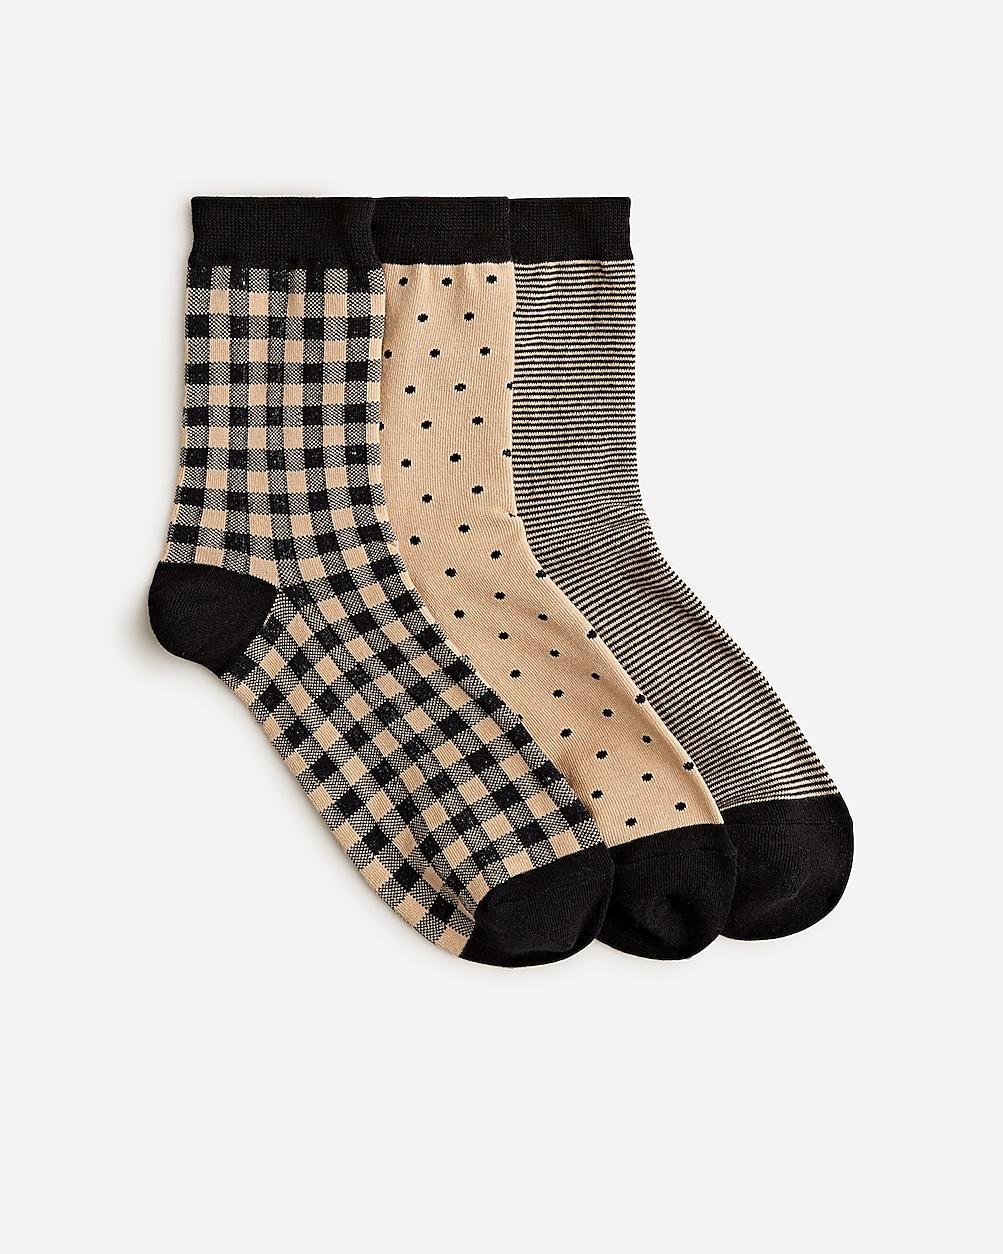 Tartan bootie socks three-pack by J.CREW